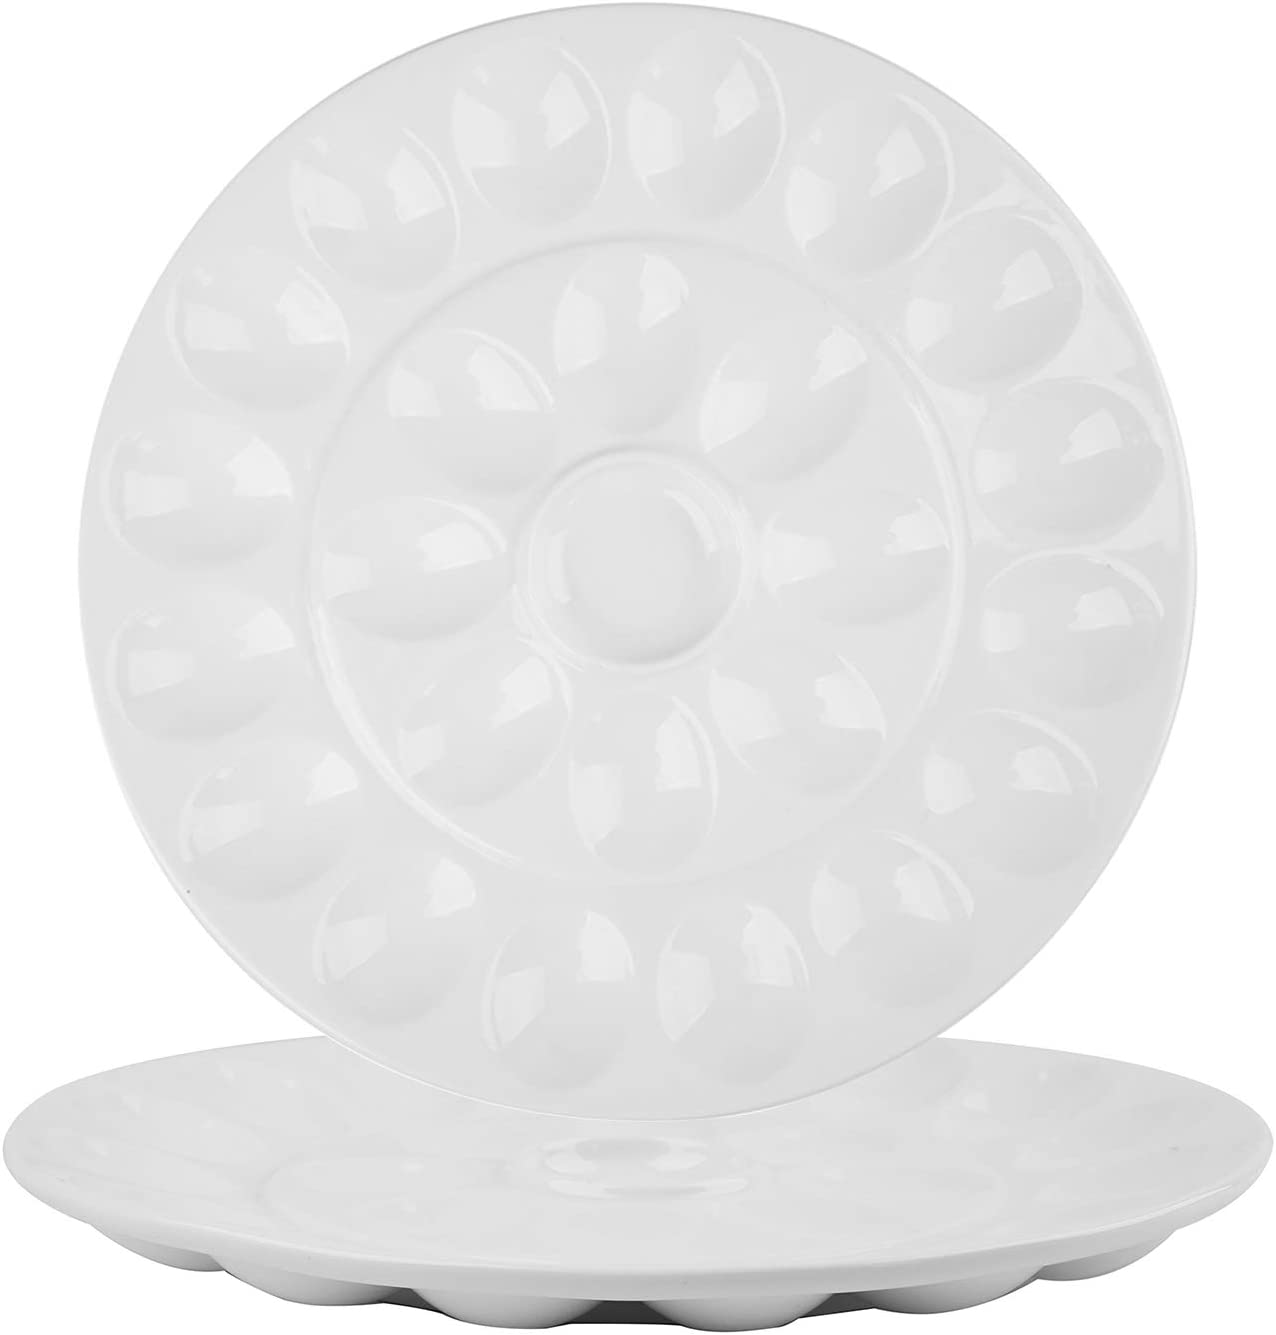 Foraineam Chip-Resistant Porcelain Egg Plates, 2-Piece